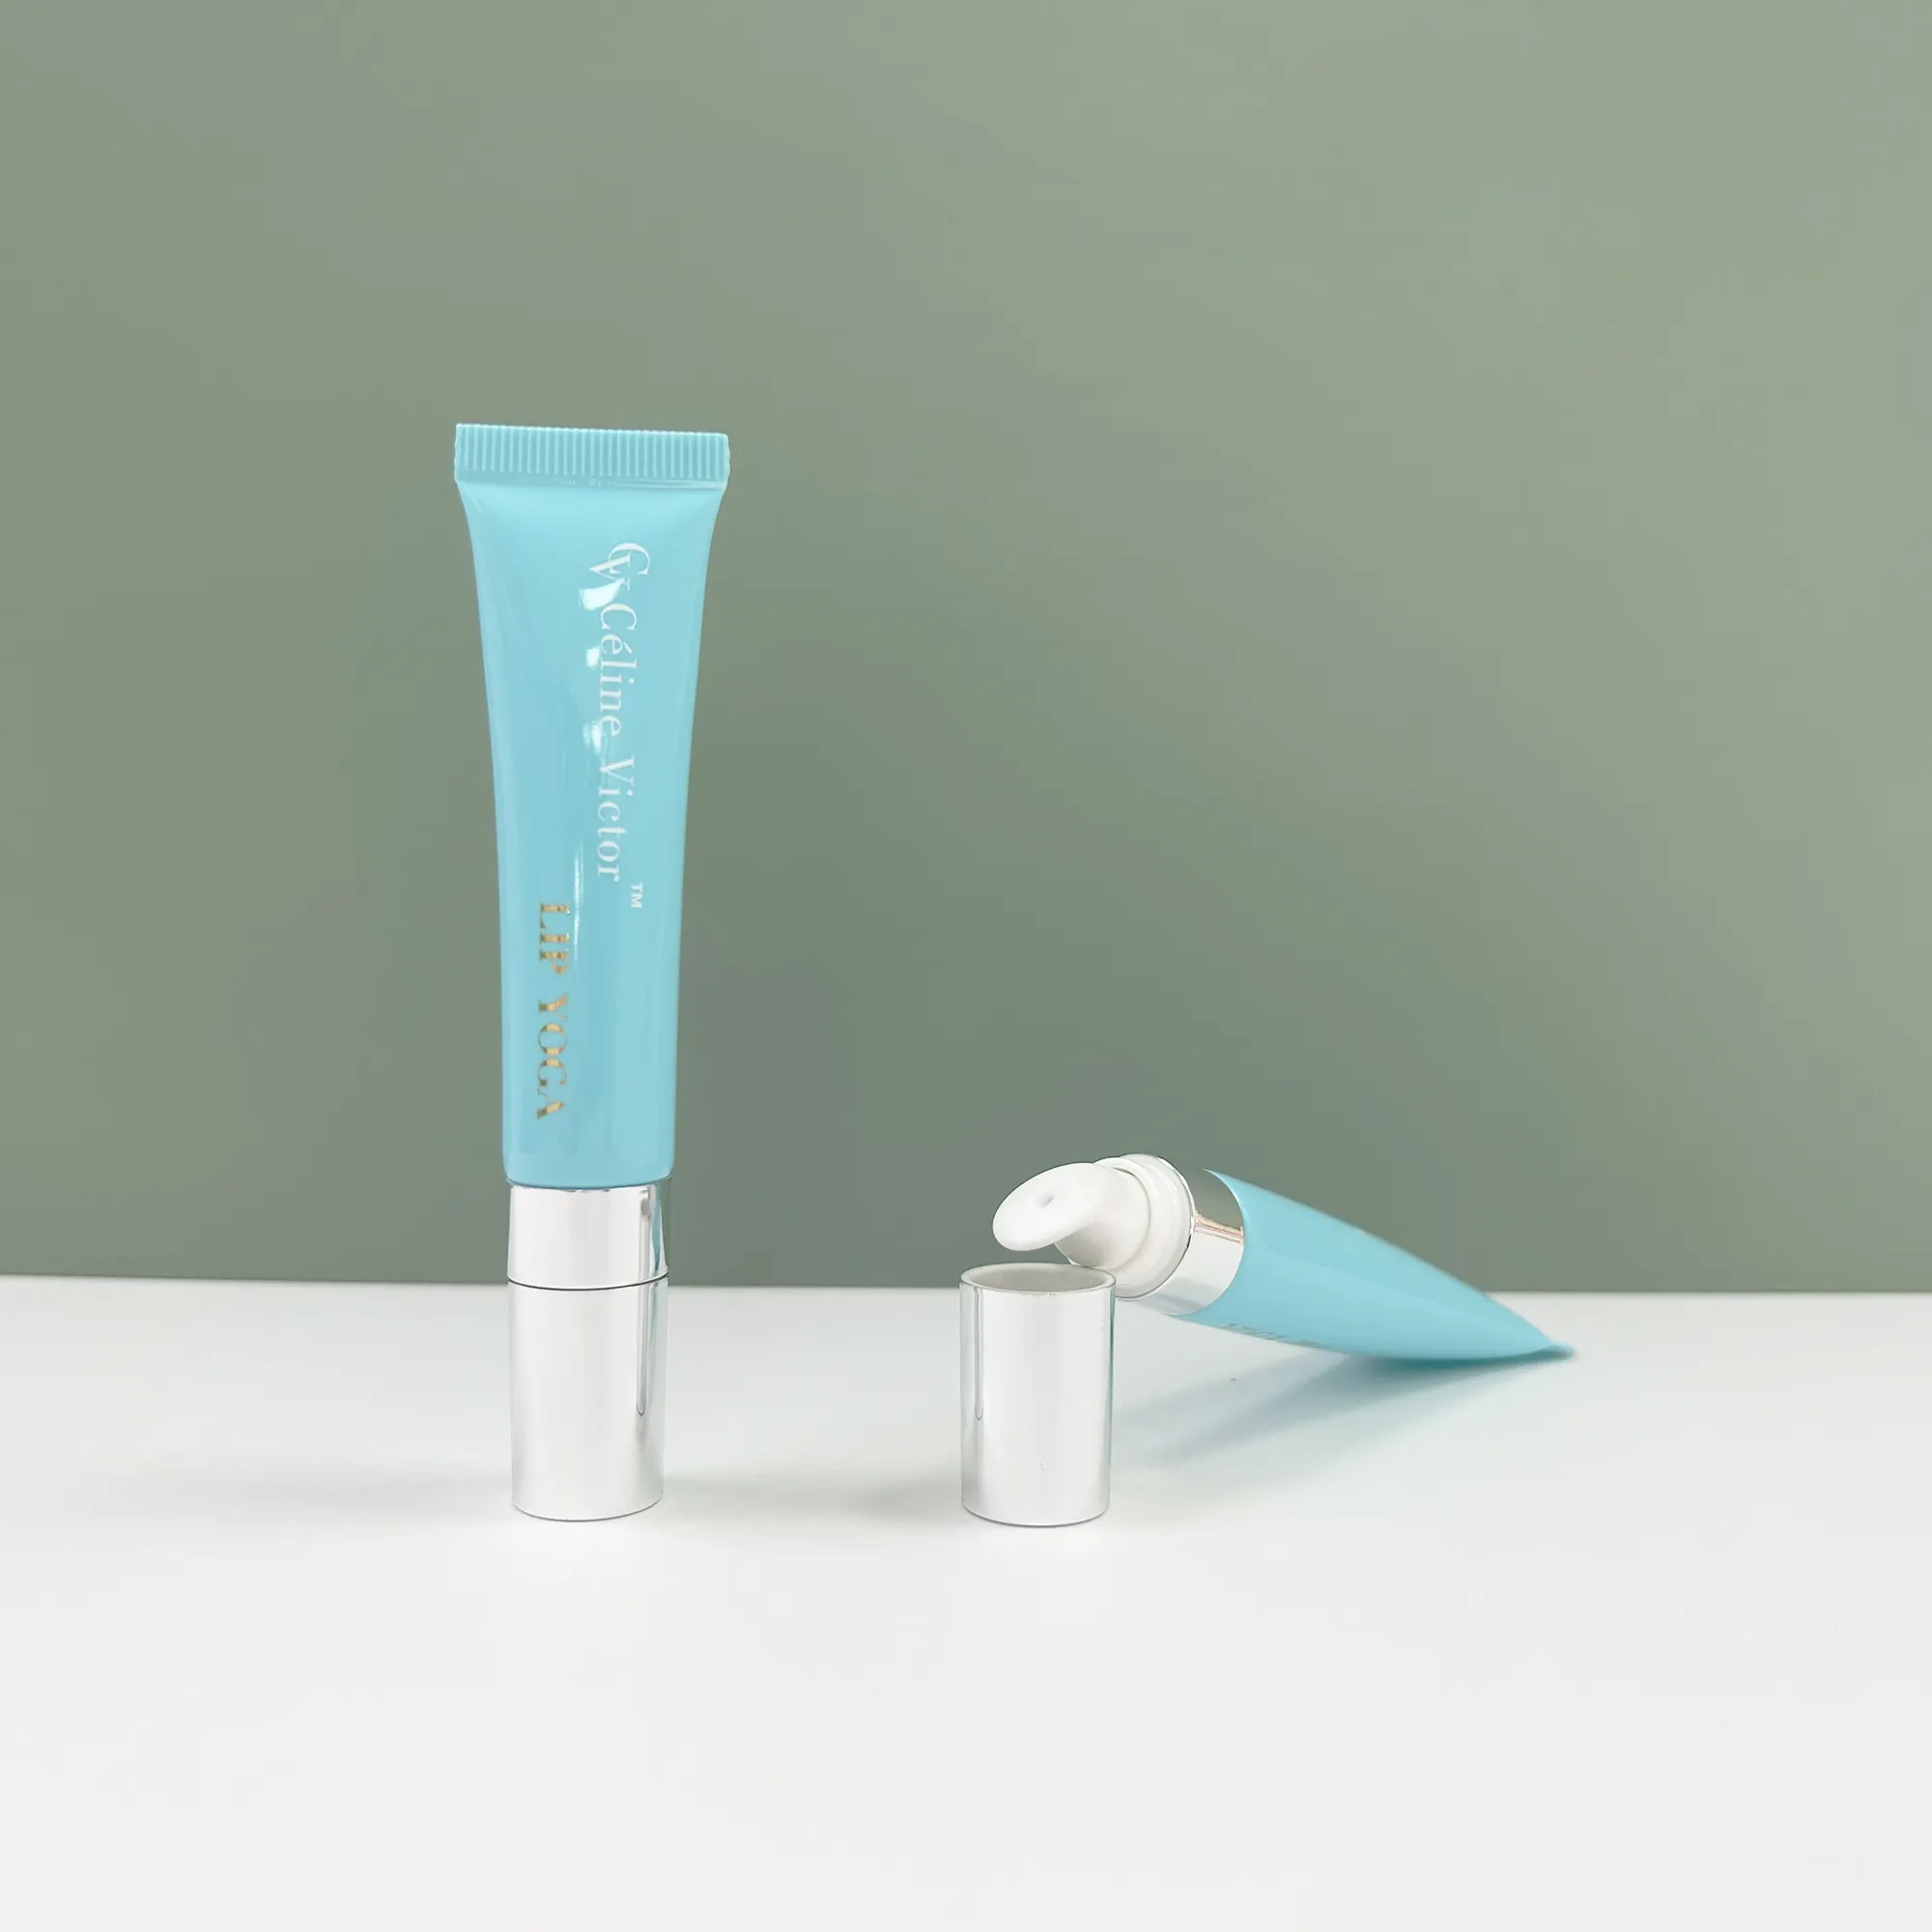 Tubo de plástico de bálsamo labial de lujo de 15ml y 15g, tubos de lápiz labial personalizados, embalaje de bálsamo labial, contenedor de tubo exprimible de lujo